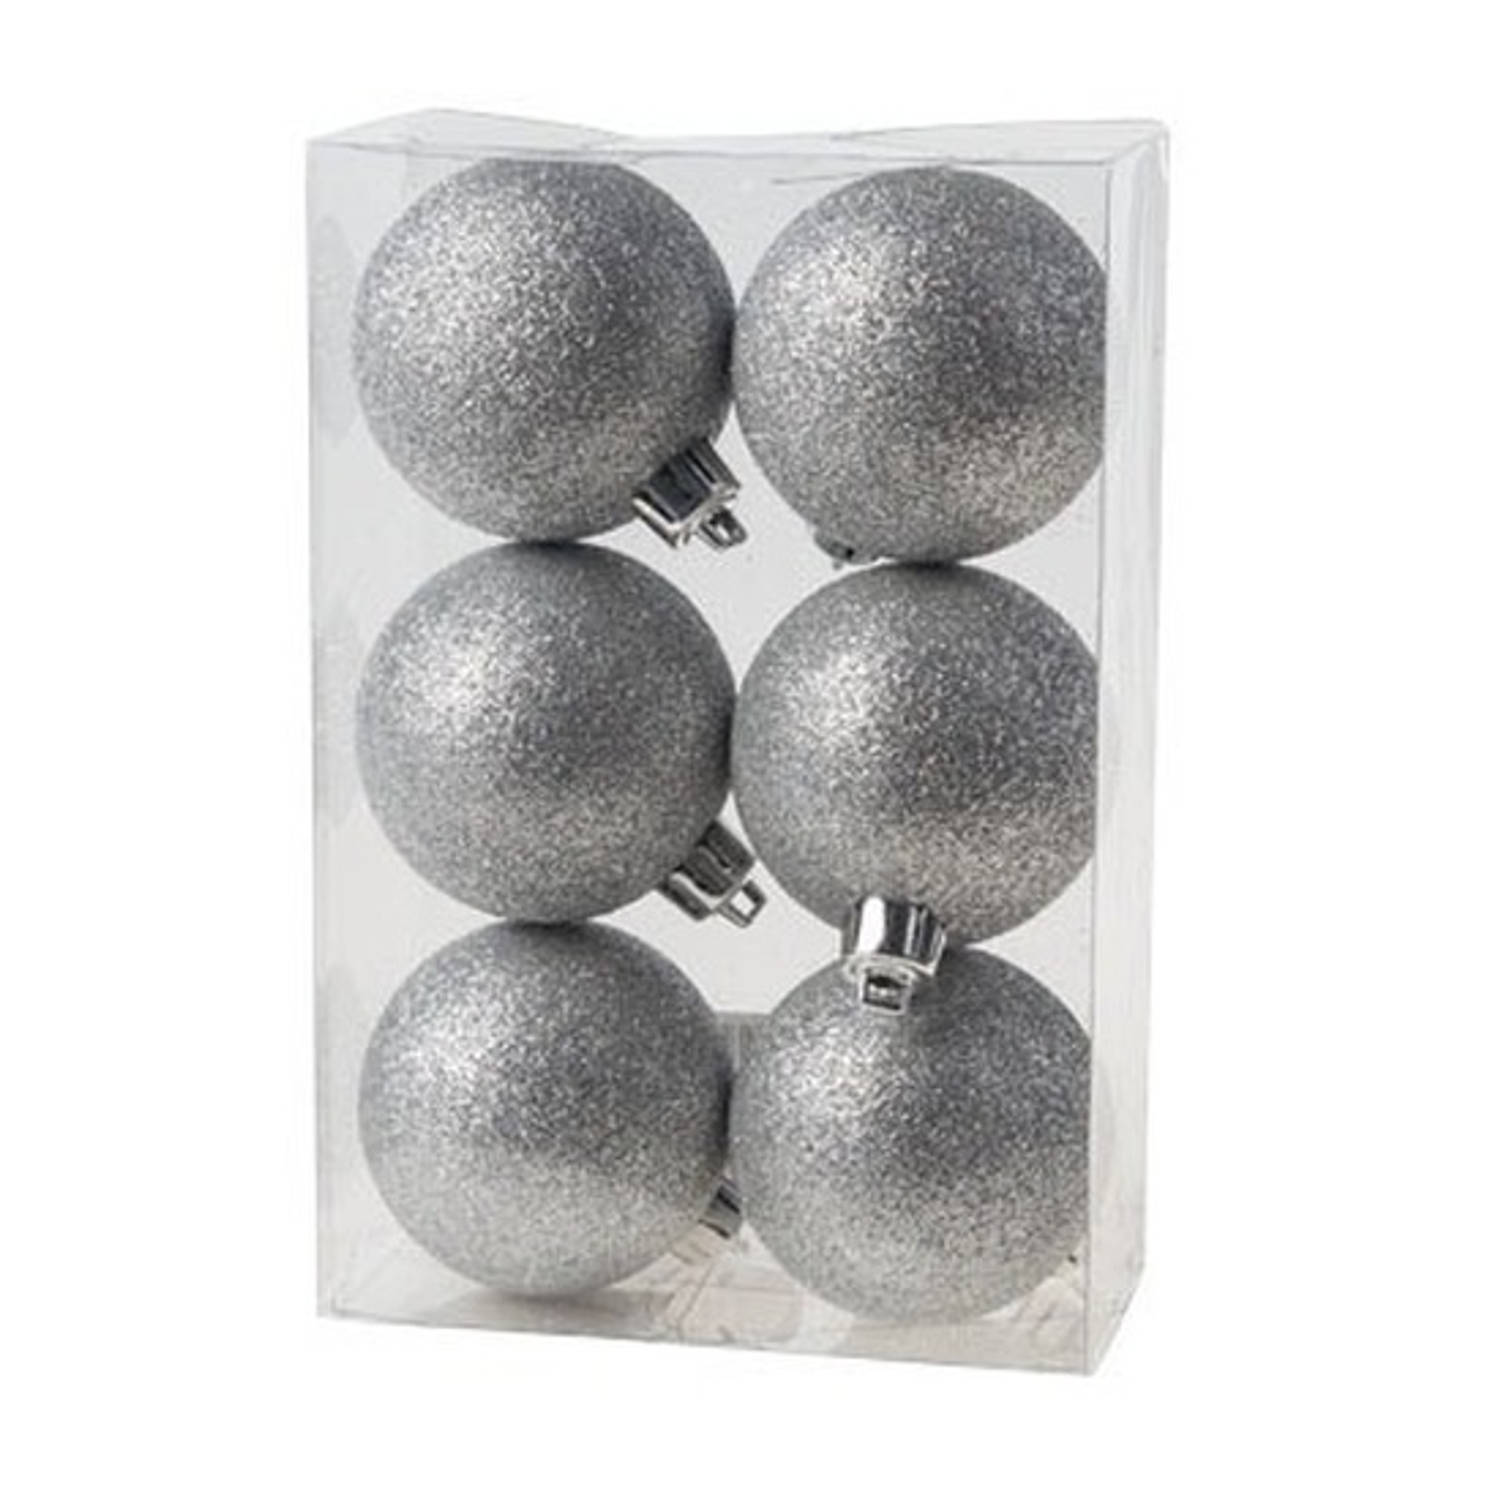 6x Kunststof kerstballen glitter zilver 6 cm kerstboom versiering/decoratie - Kerstbal